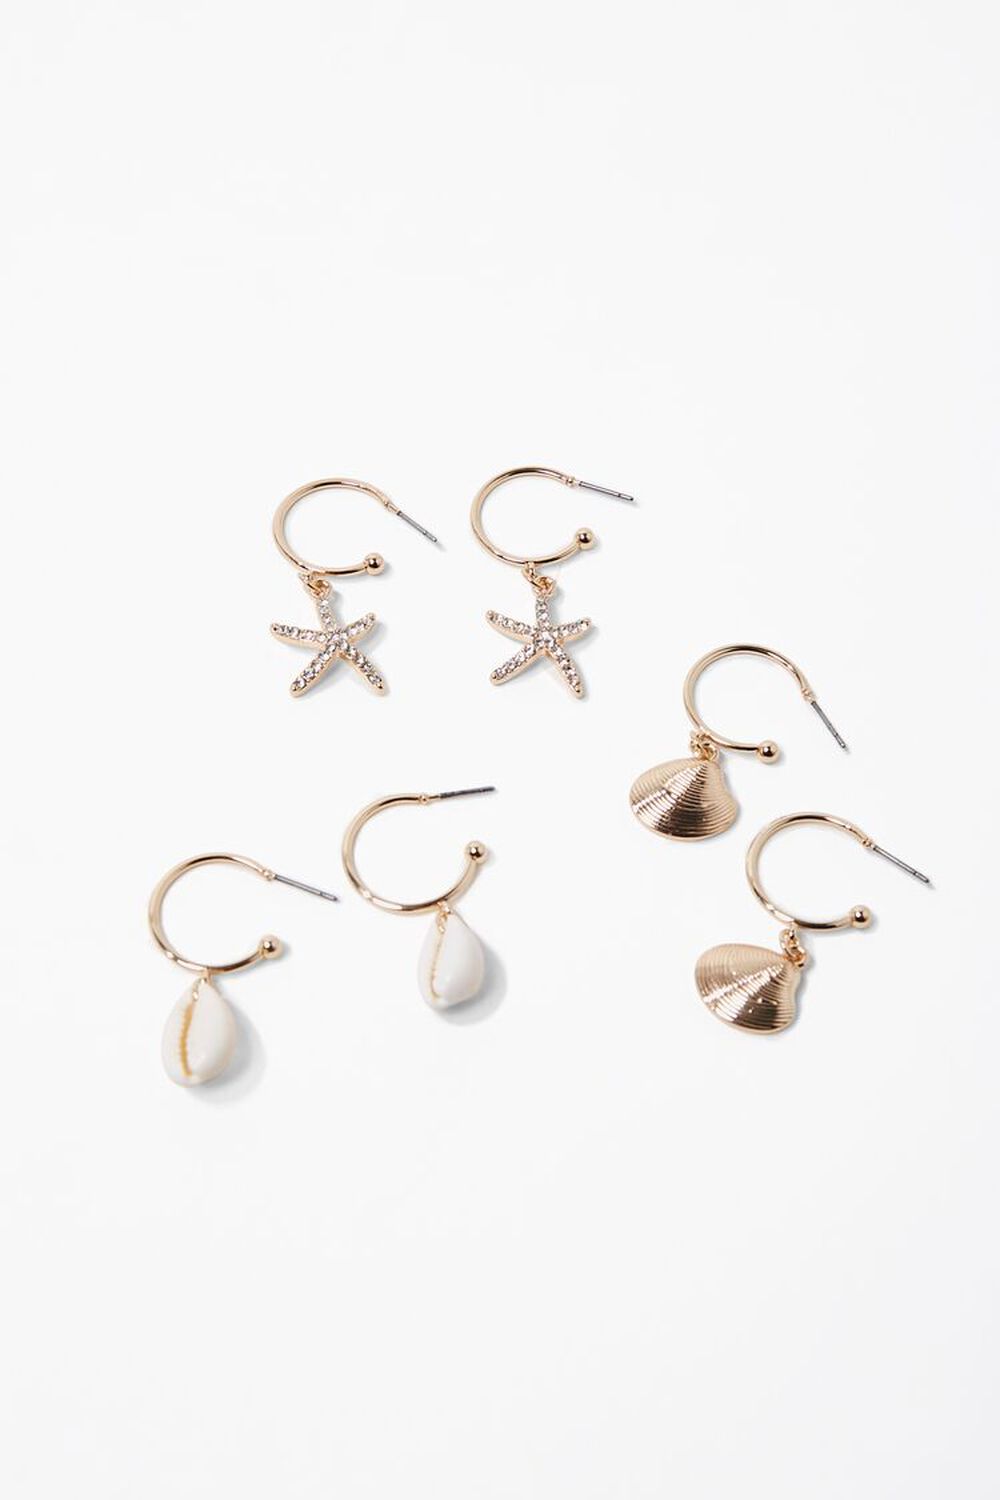 GOLD/IVORY Seashell Charm Hoop Earring Set, image 1